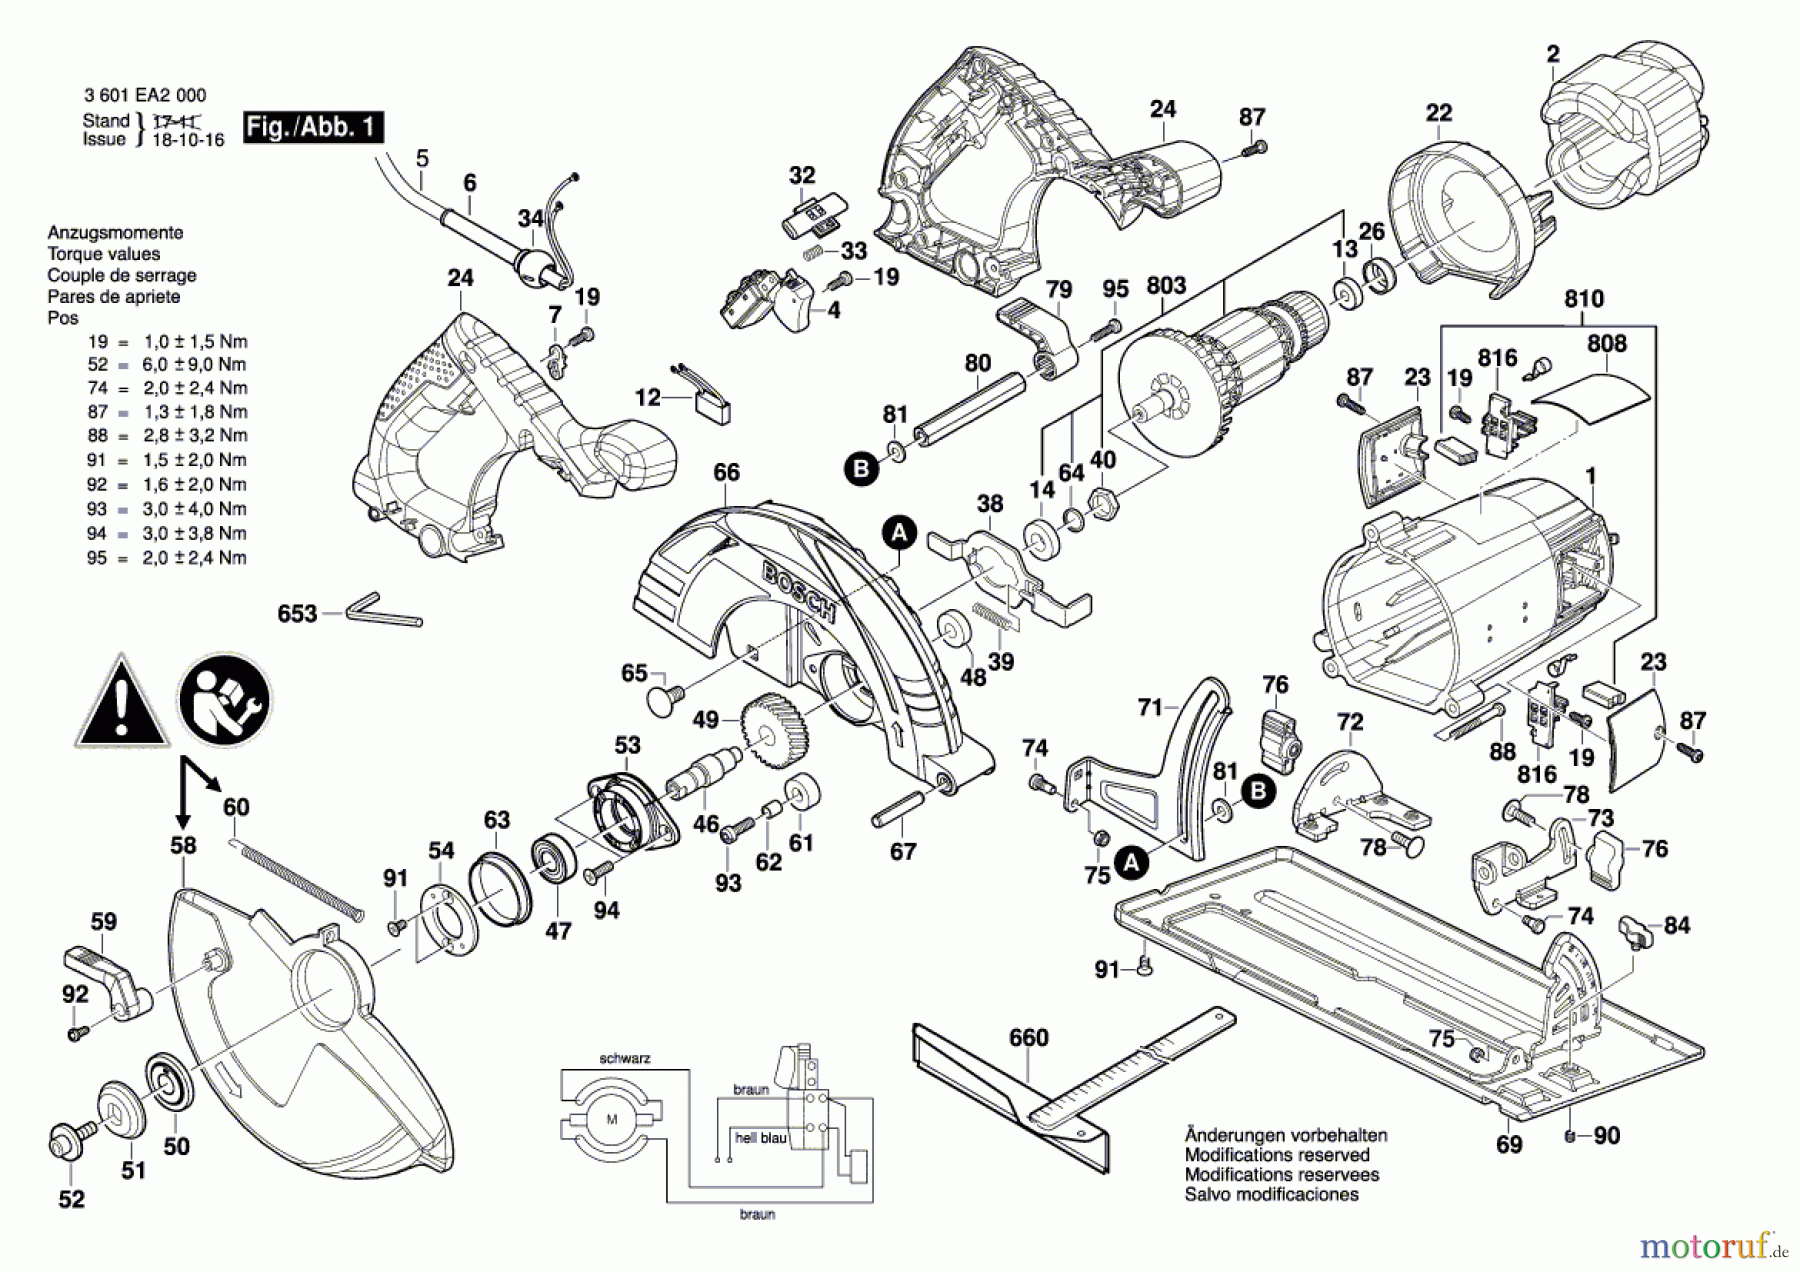  Bosch Werkzeug Handkreissäge GKS 235 Turbo Seite 1